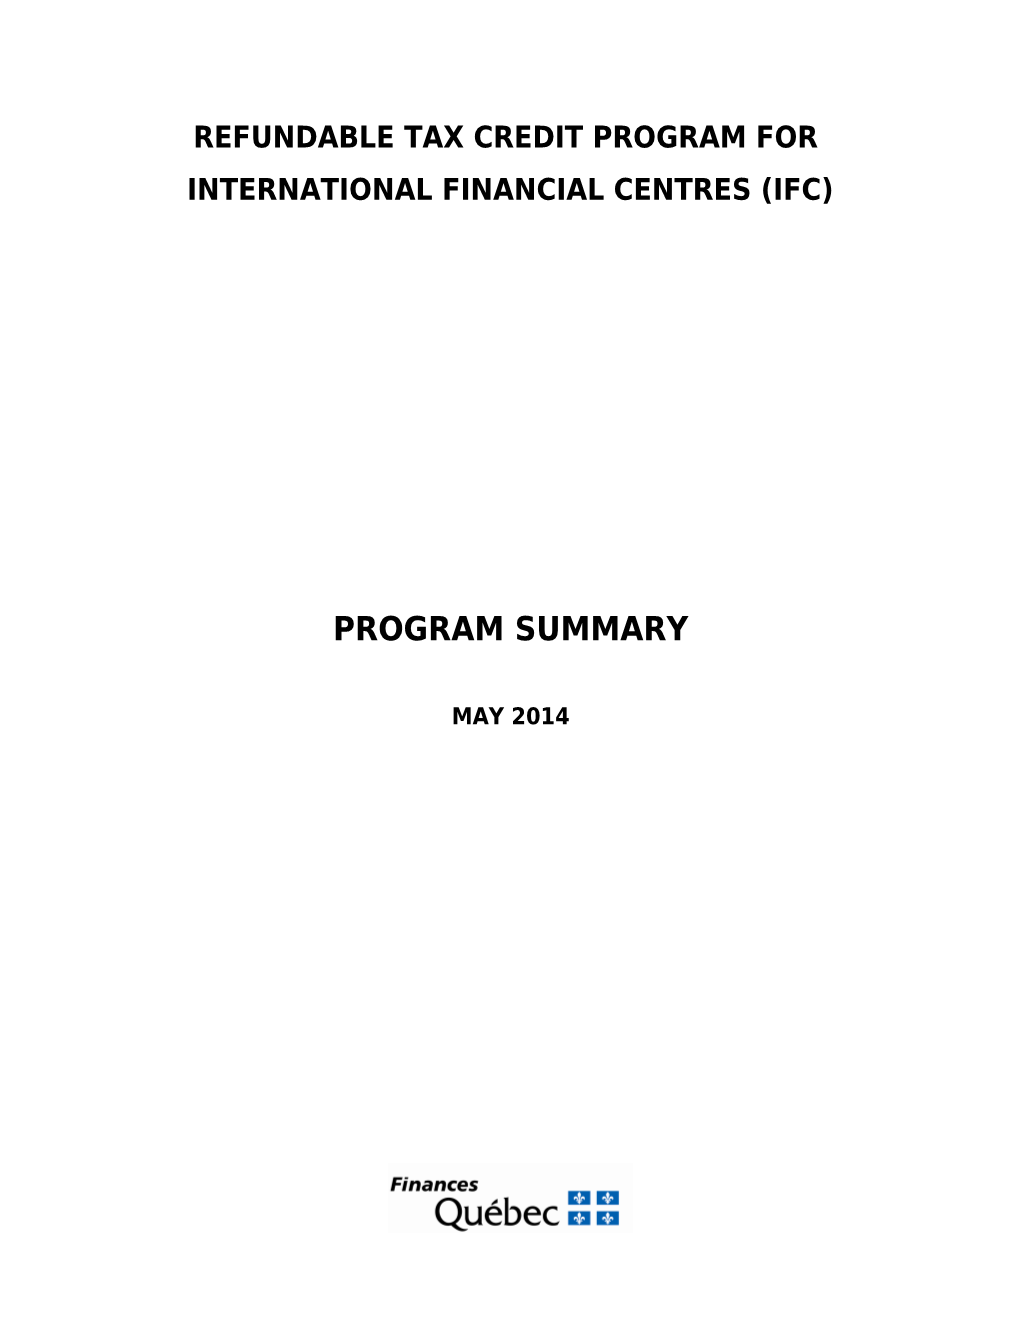 Programme De Crédit D Impôt Remboursable Pour Les Centres Financiers Internationaux (CFI)